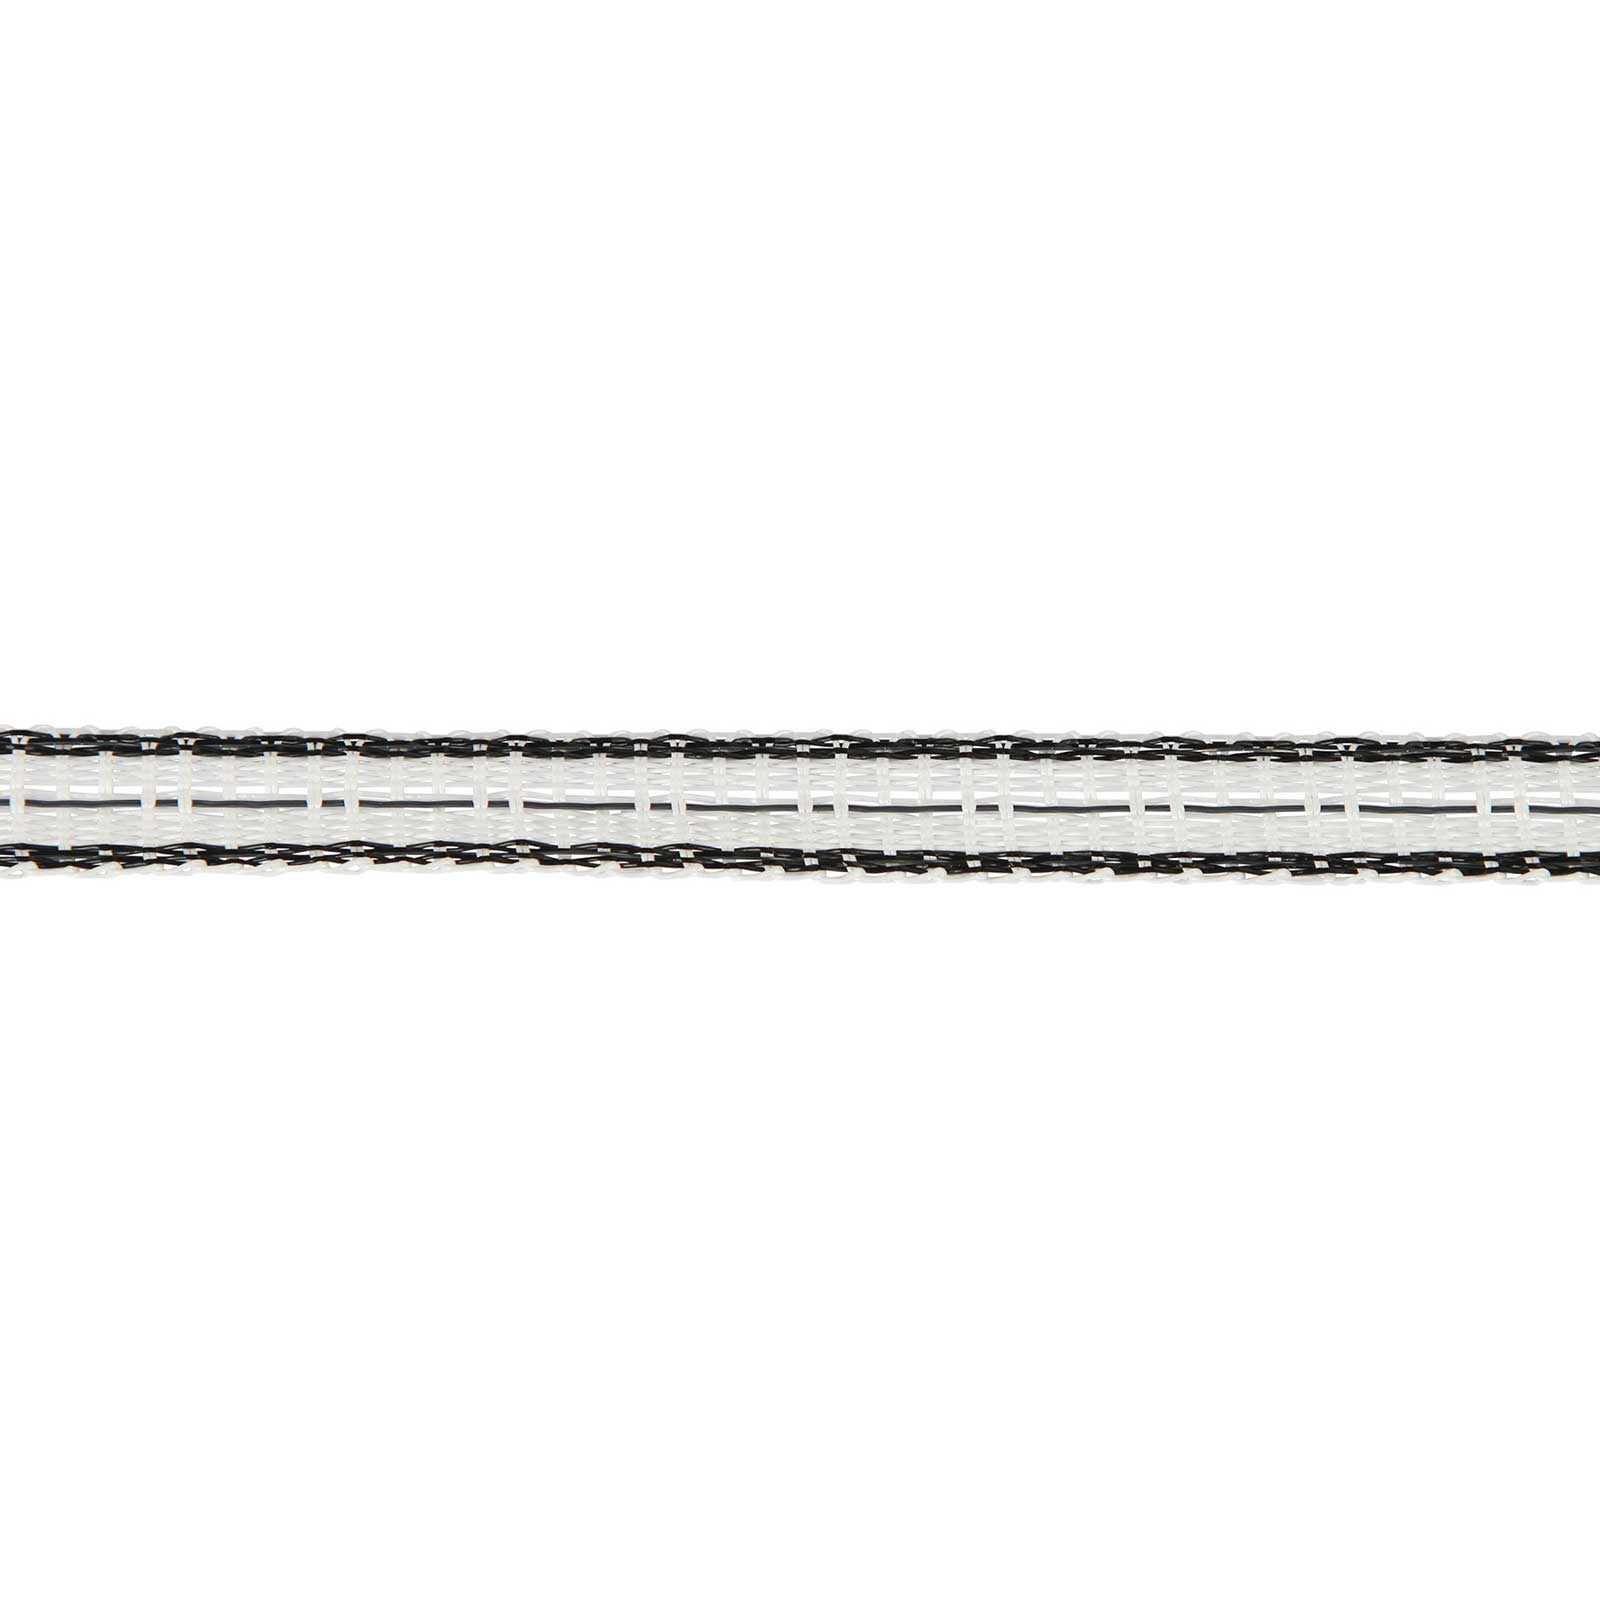 AKO Betesmarkstängselband TopLine 200m, 10mm, 4x0,25 TriCOND, vit-svart